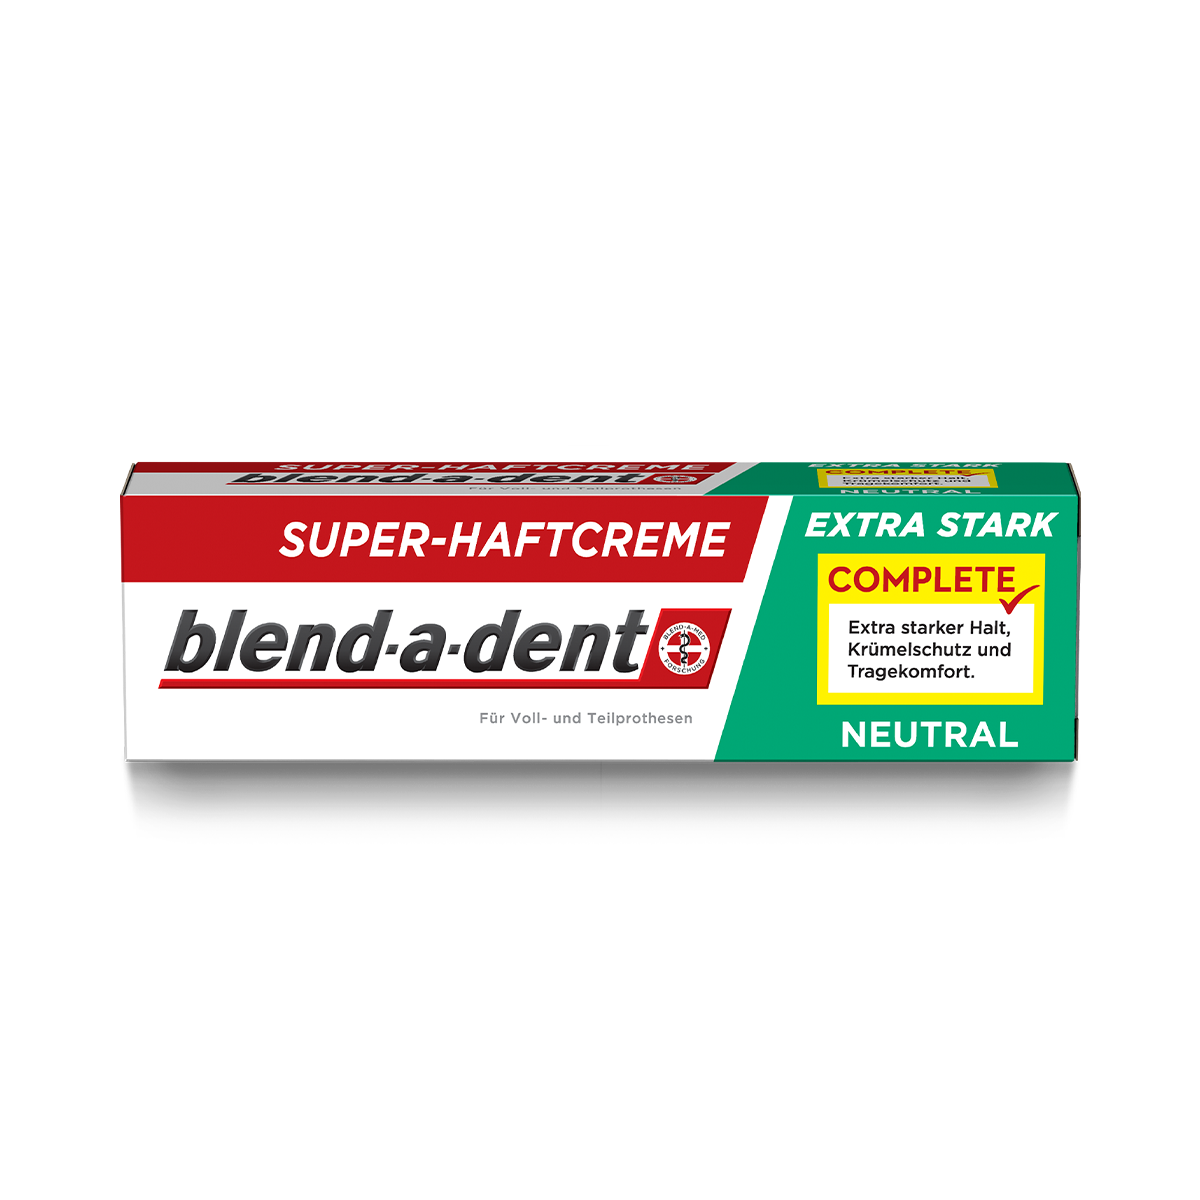 blend-a-dent Complete Neutral Haftcremeó